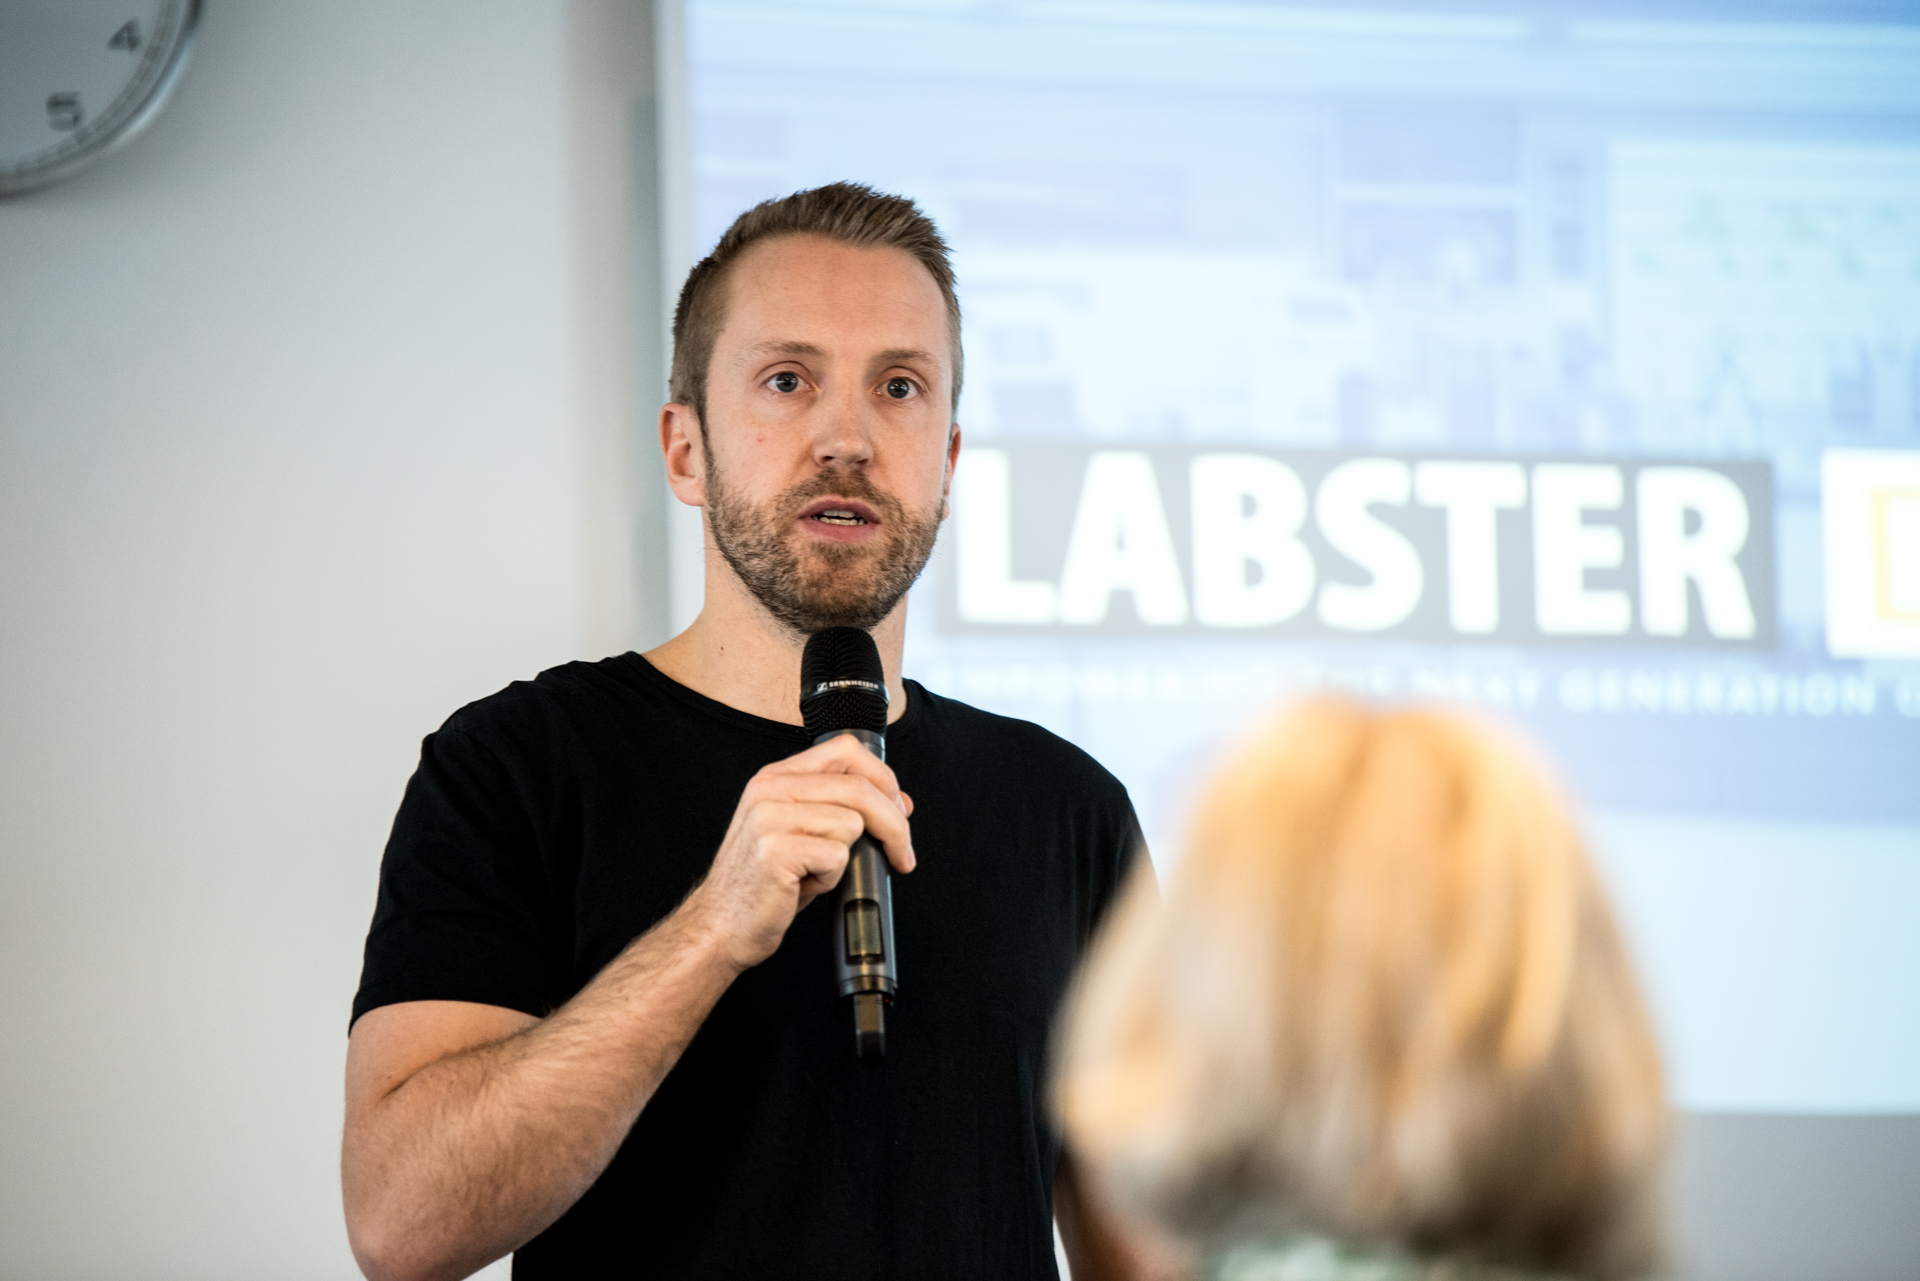 Mikkel Marfelt fra Labster introducerer casecompetition for studerende på Cphbusiness